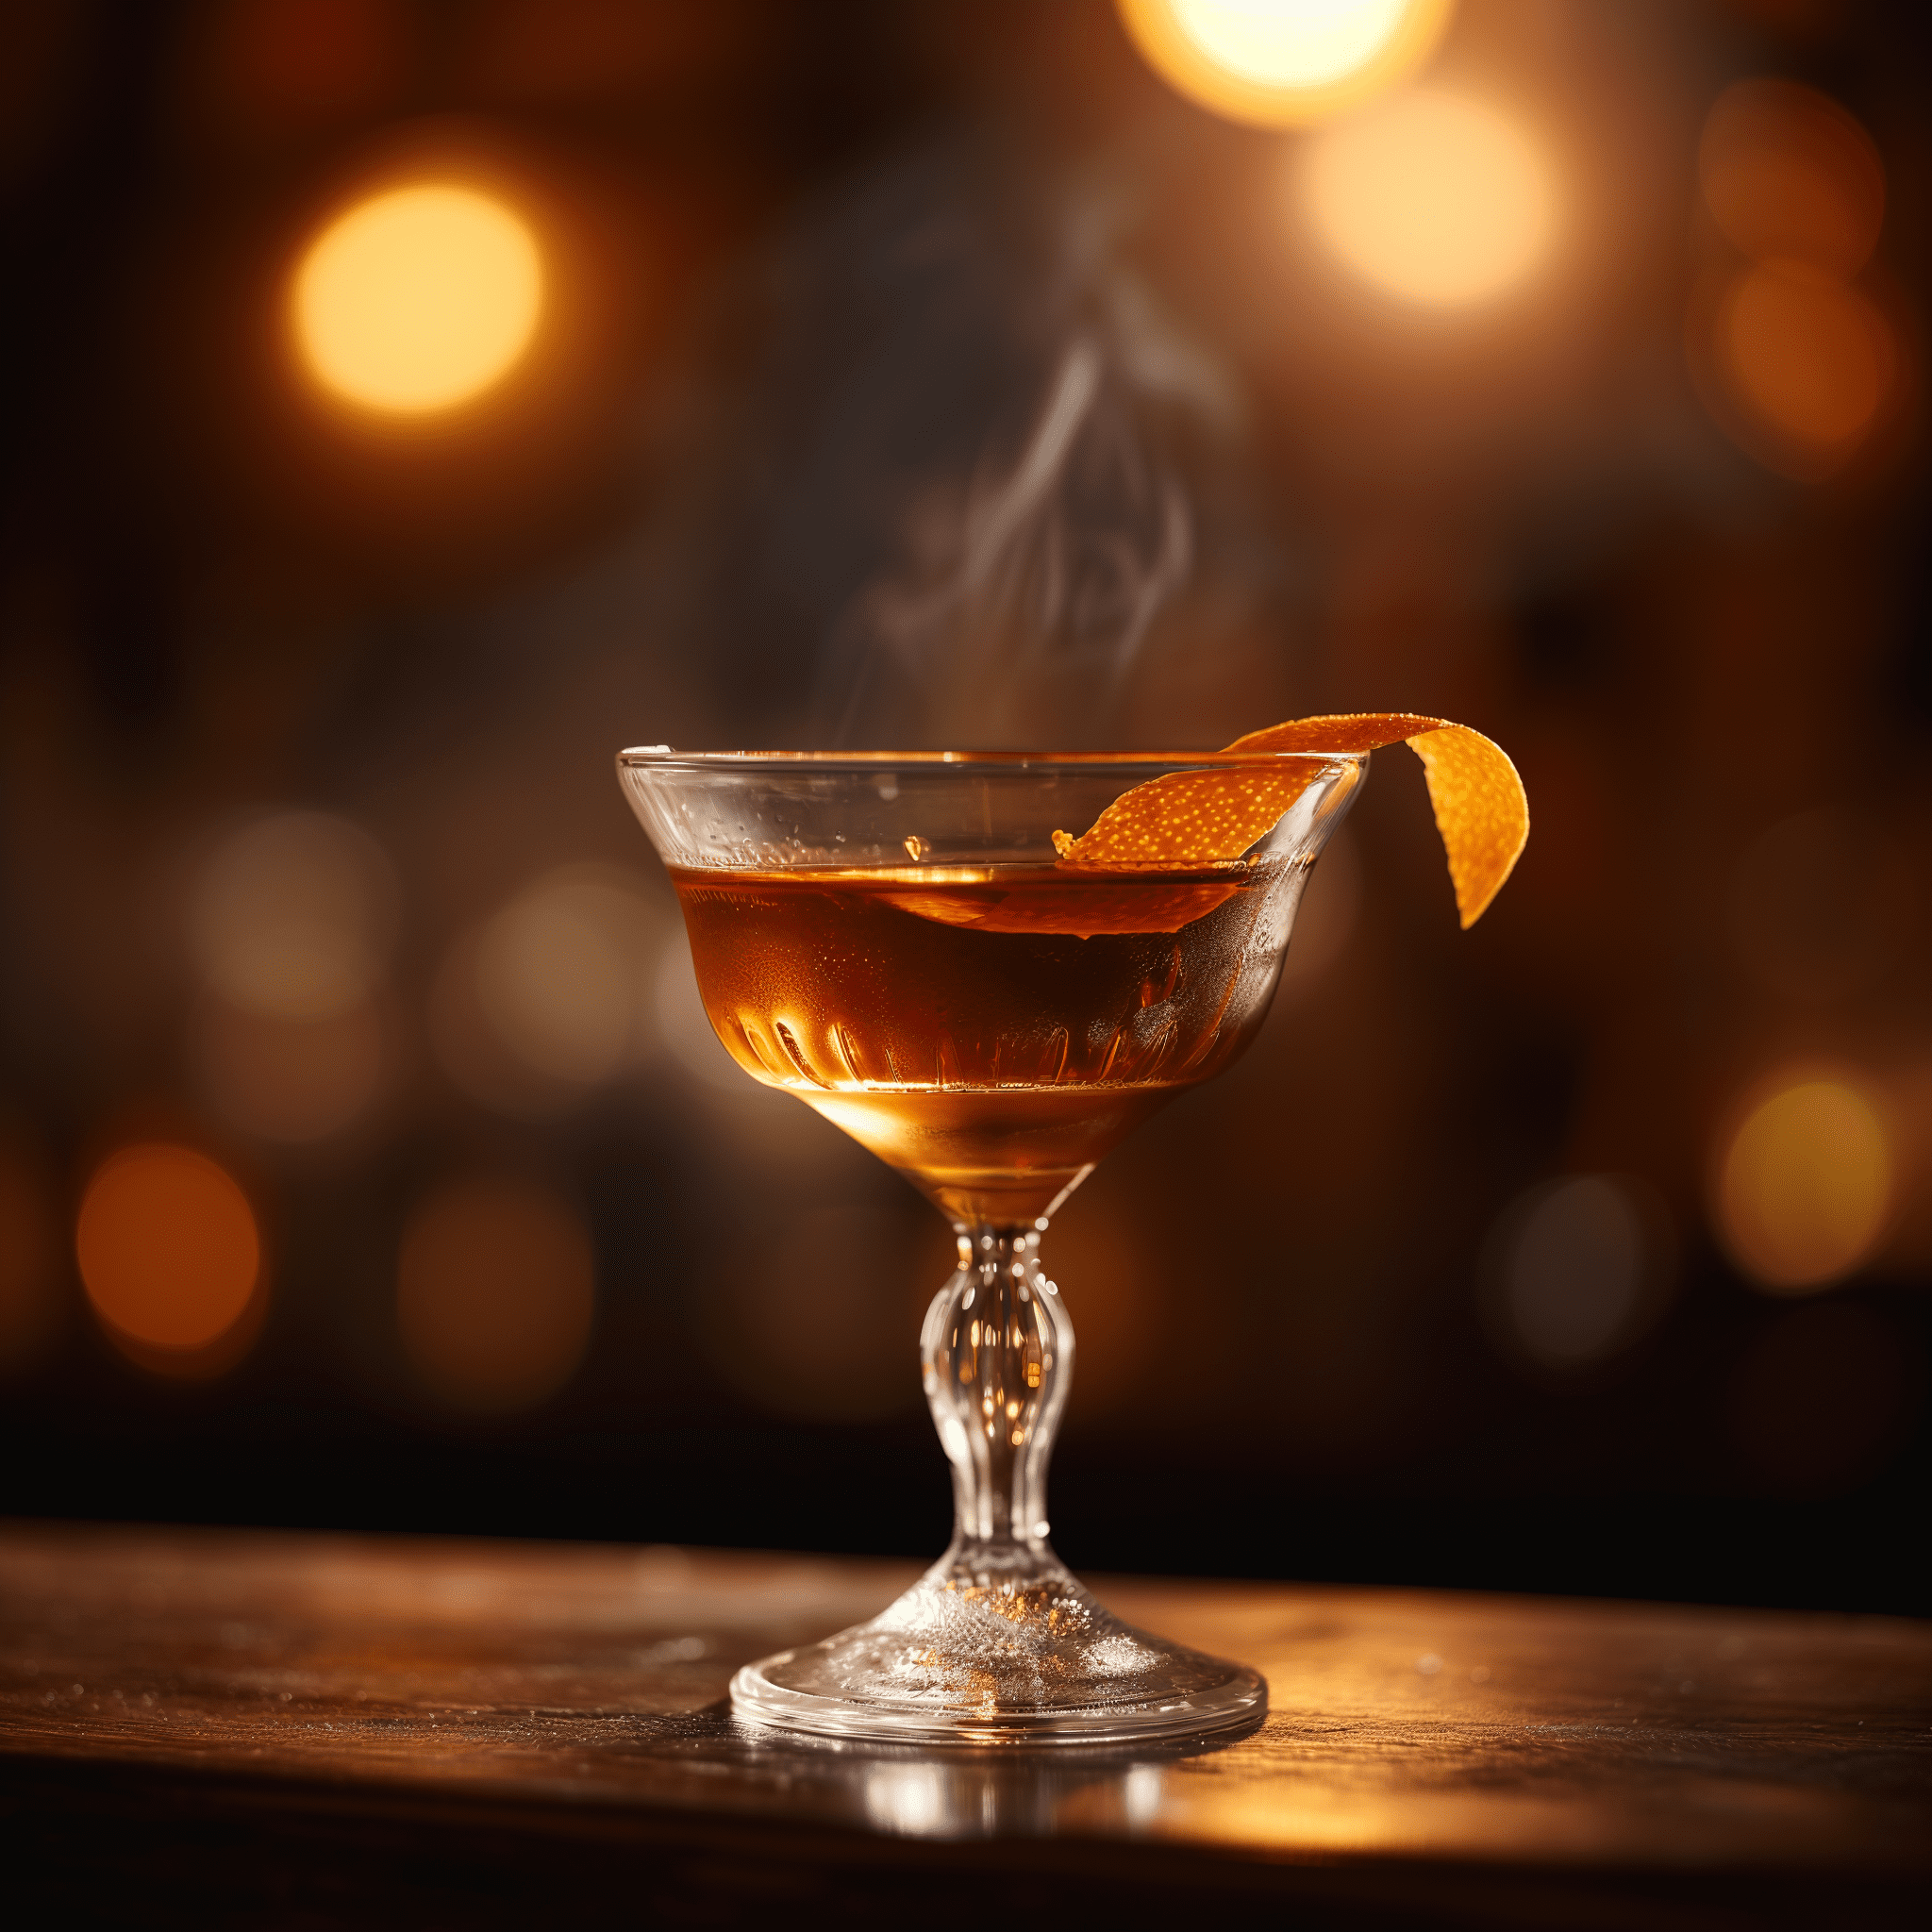 Devil's Soul Cóctel Receta - Devil's Soul es un cóctel con una mezcla conmovedora de ahumado del mezcal, el calor especiado del whisky de centeno y la amargura herbal del amaro. Los amargos de naranja y el saúco añaden una complejidad floral y cítrica, lo que lo convierte en una bebida estratificada e intrigante.